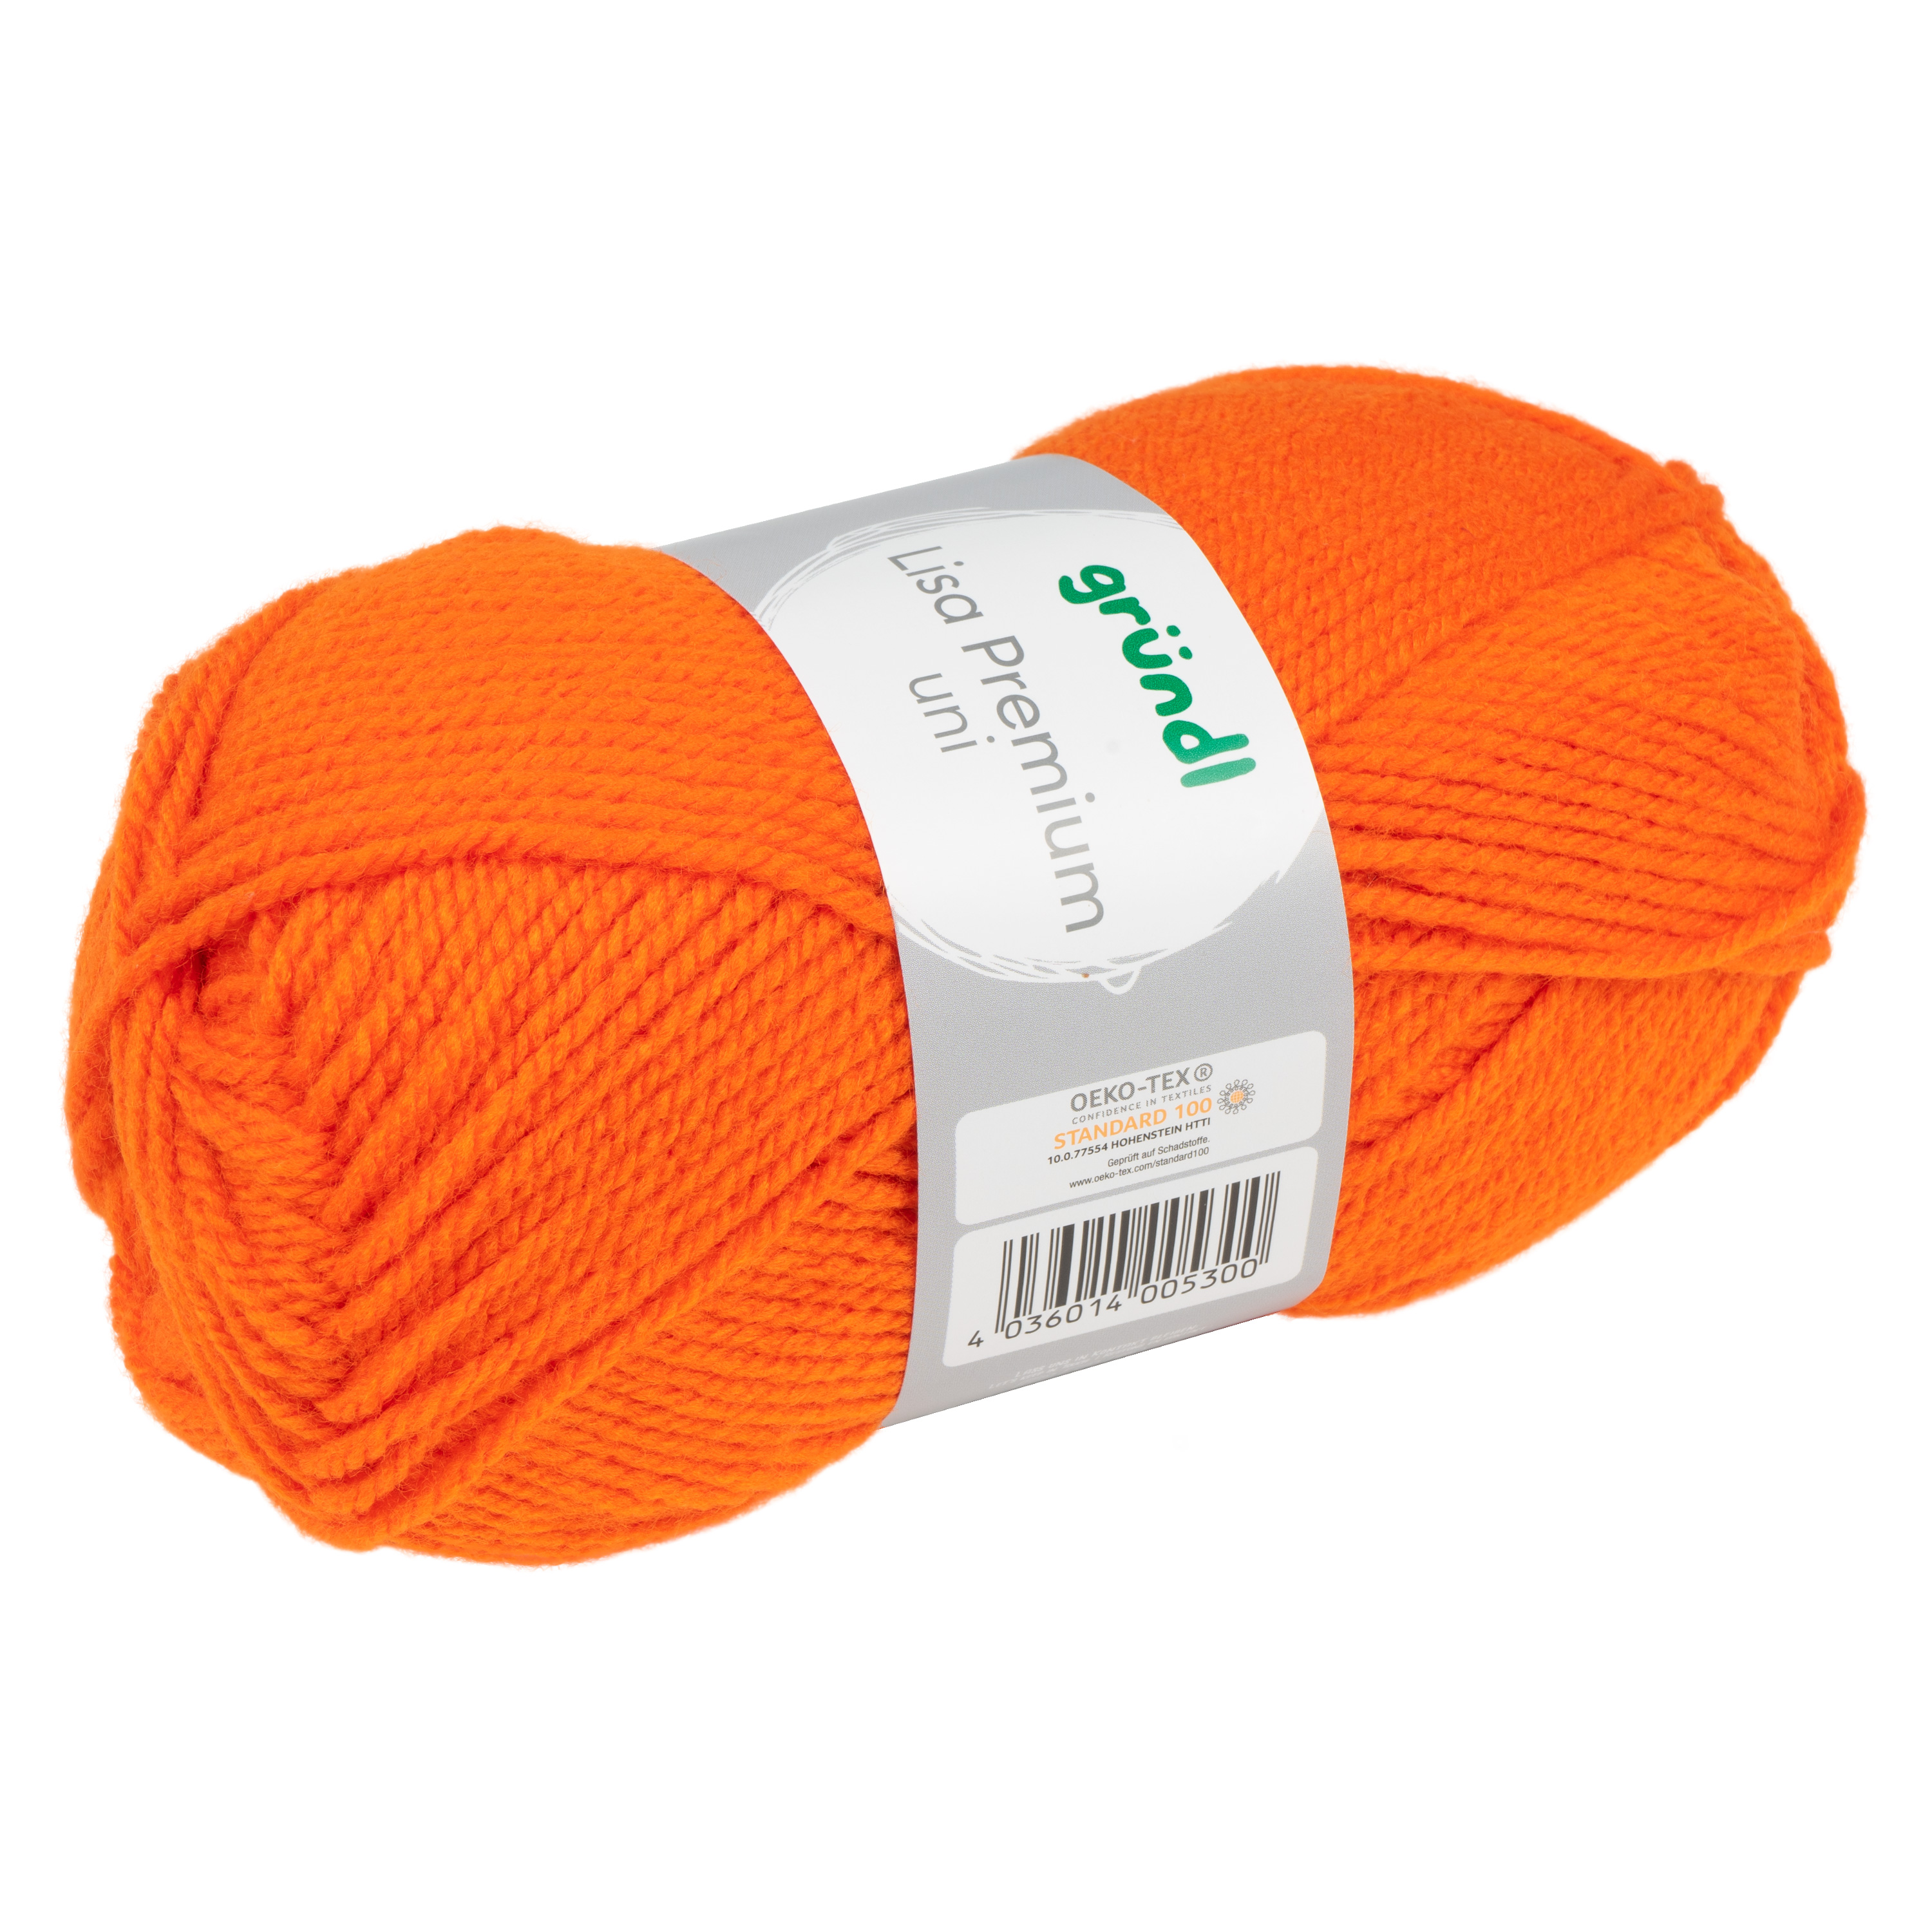 Universalwolle 'Lisa', 50 g je Knäuel, orange